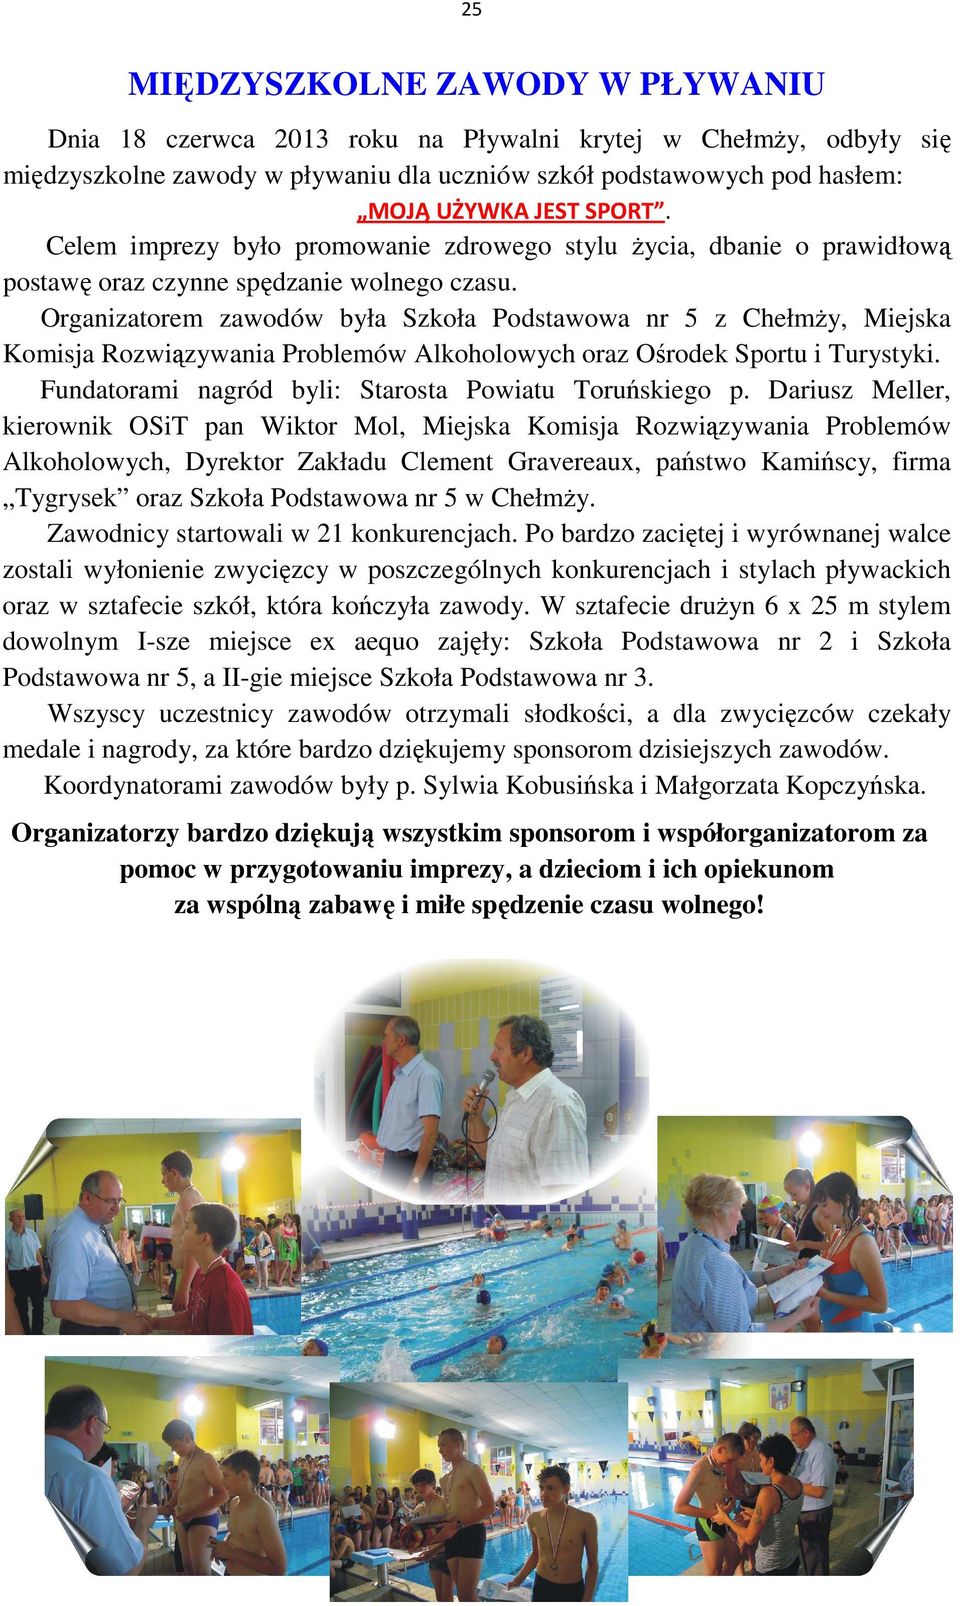 Organizatorem zawodów była Szkoła Podstawowa nr 5 z Chełmży, Miejska Komisja Rozwiązywania Problemów Alkoholowych oraz Ośrodek Sportu i Turystyki.